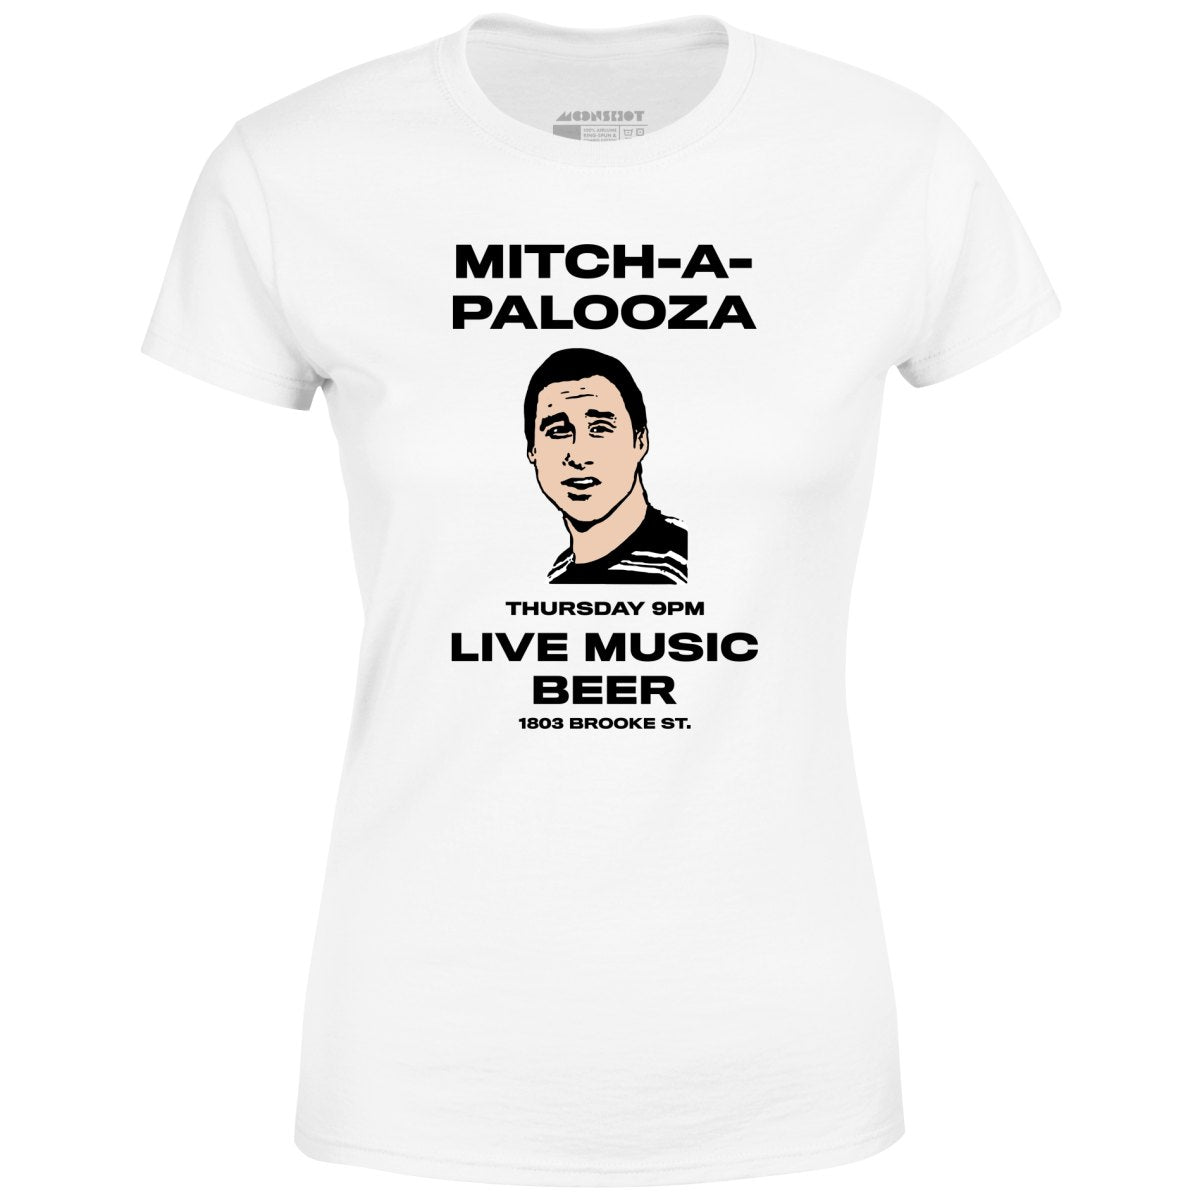 Mitch-A-Palooza - Women's T-Shirt